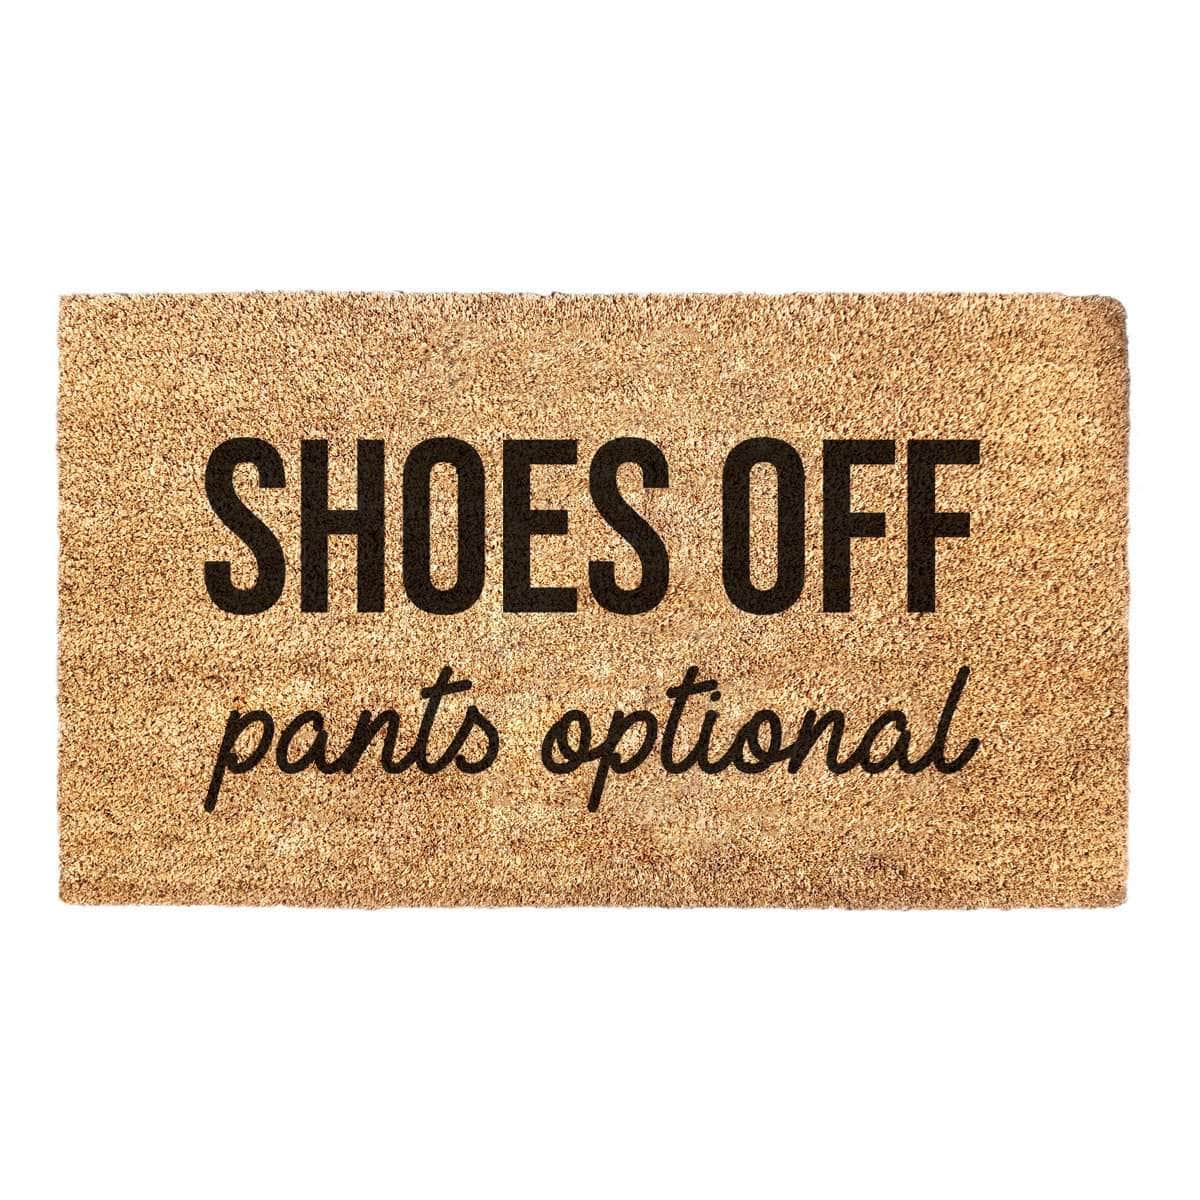 Shoes Off Pants Optional - Doormat